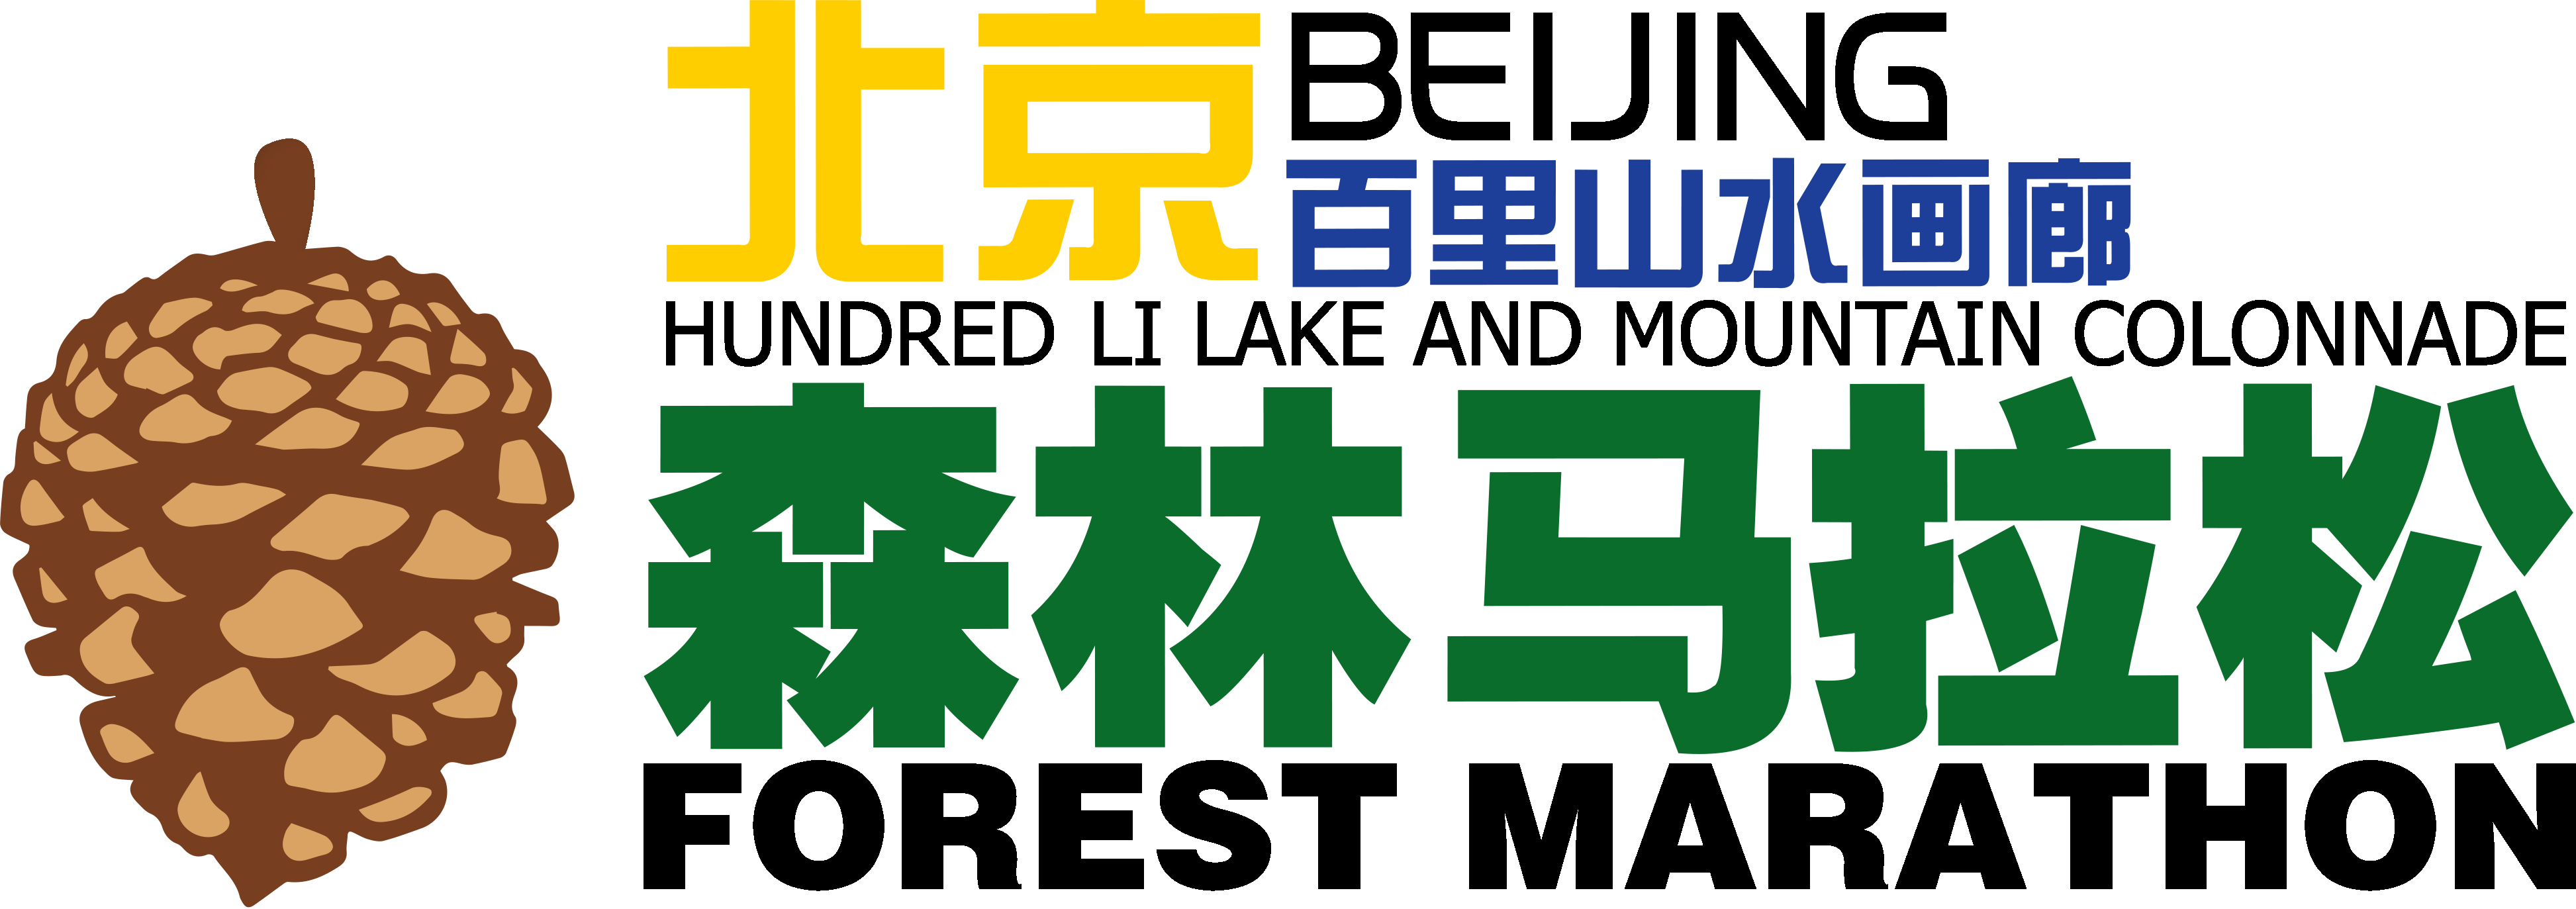 马孔多跑步装备·2018第四届北京百里山水画廊森林马拉松